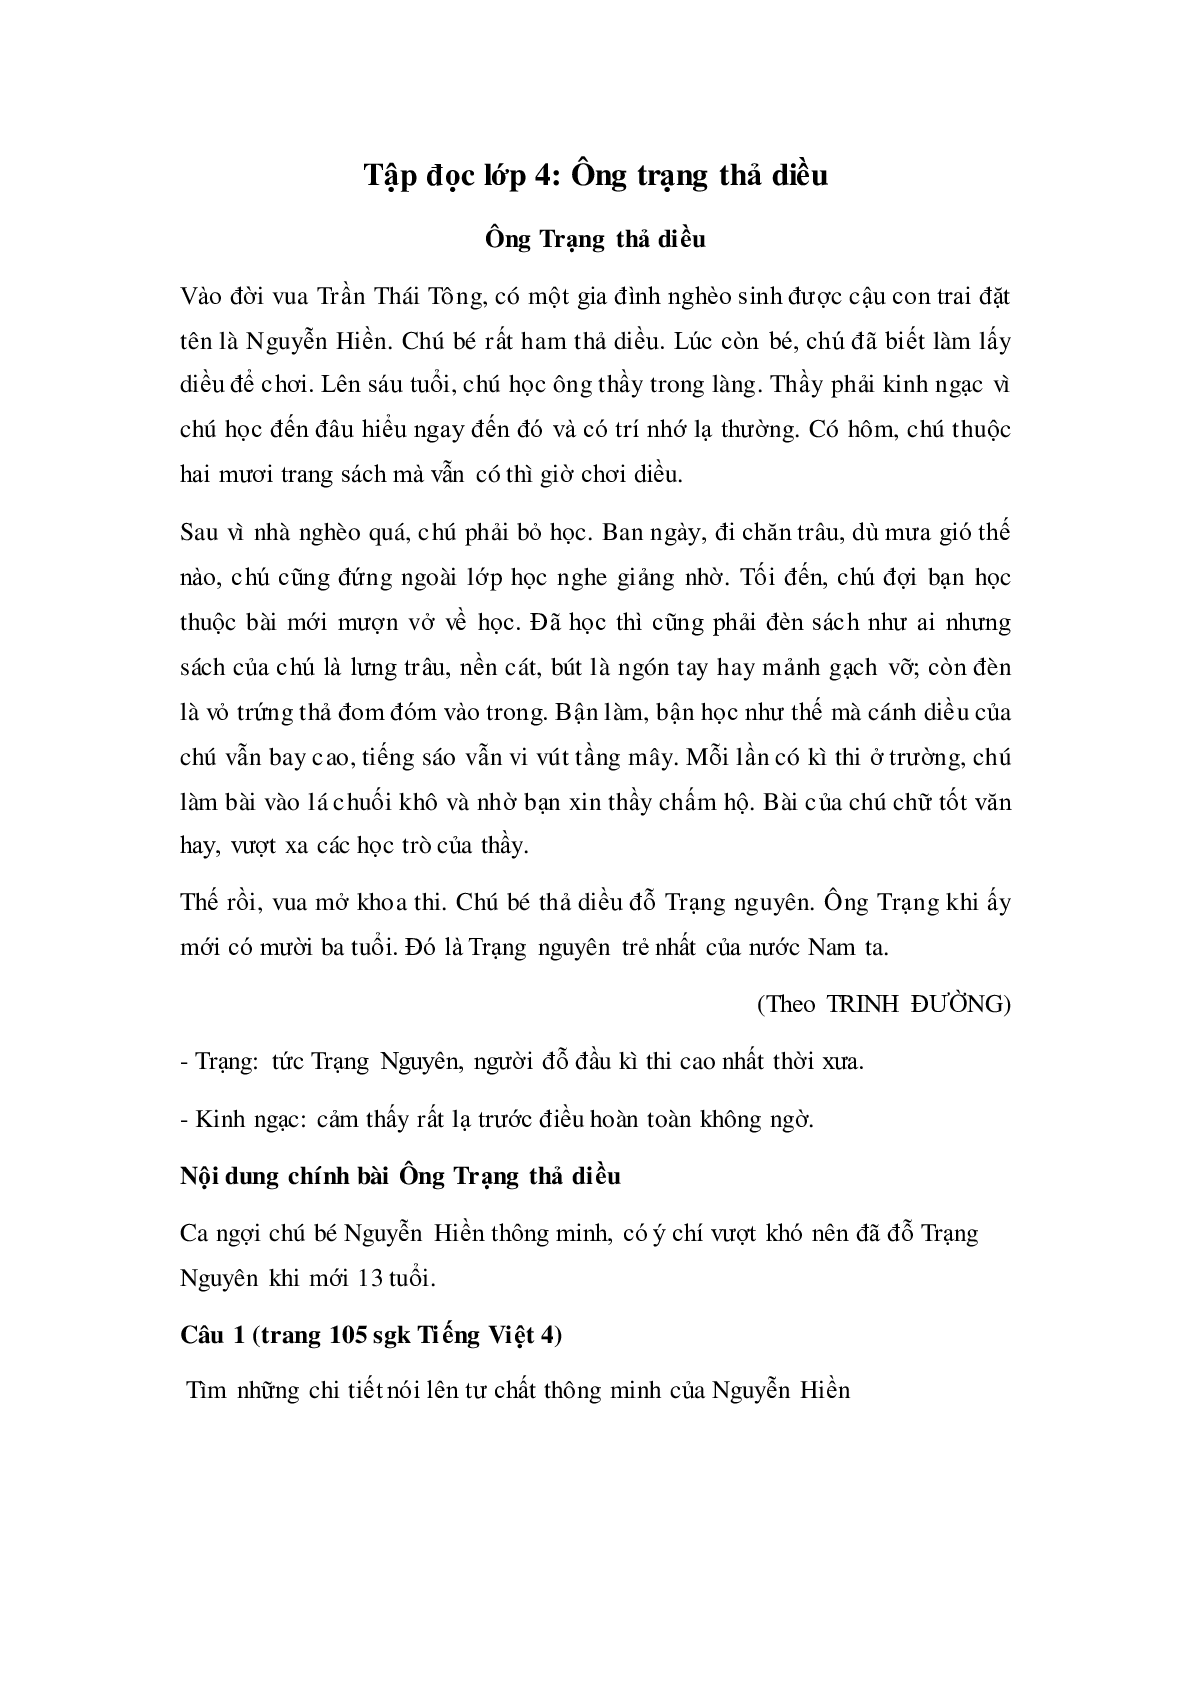 Soạn Tiếng Việt lớp 4: Tập đọc: Ông Trạng thả diều mới nhất (trang 1)